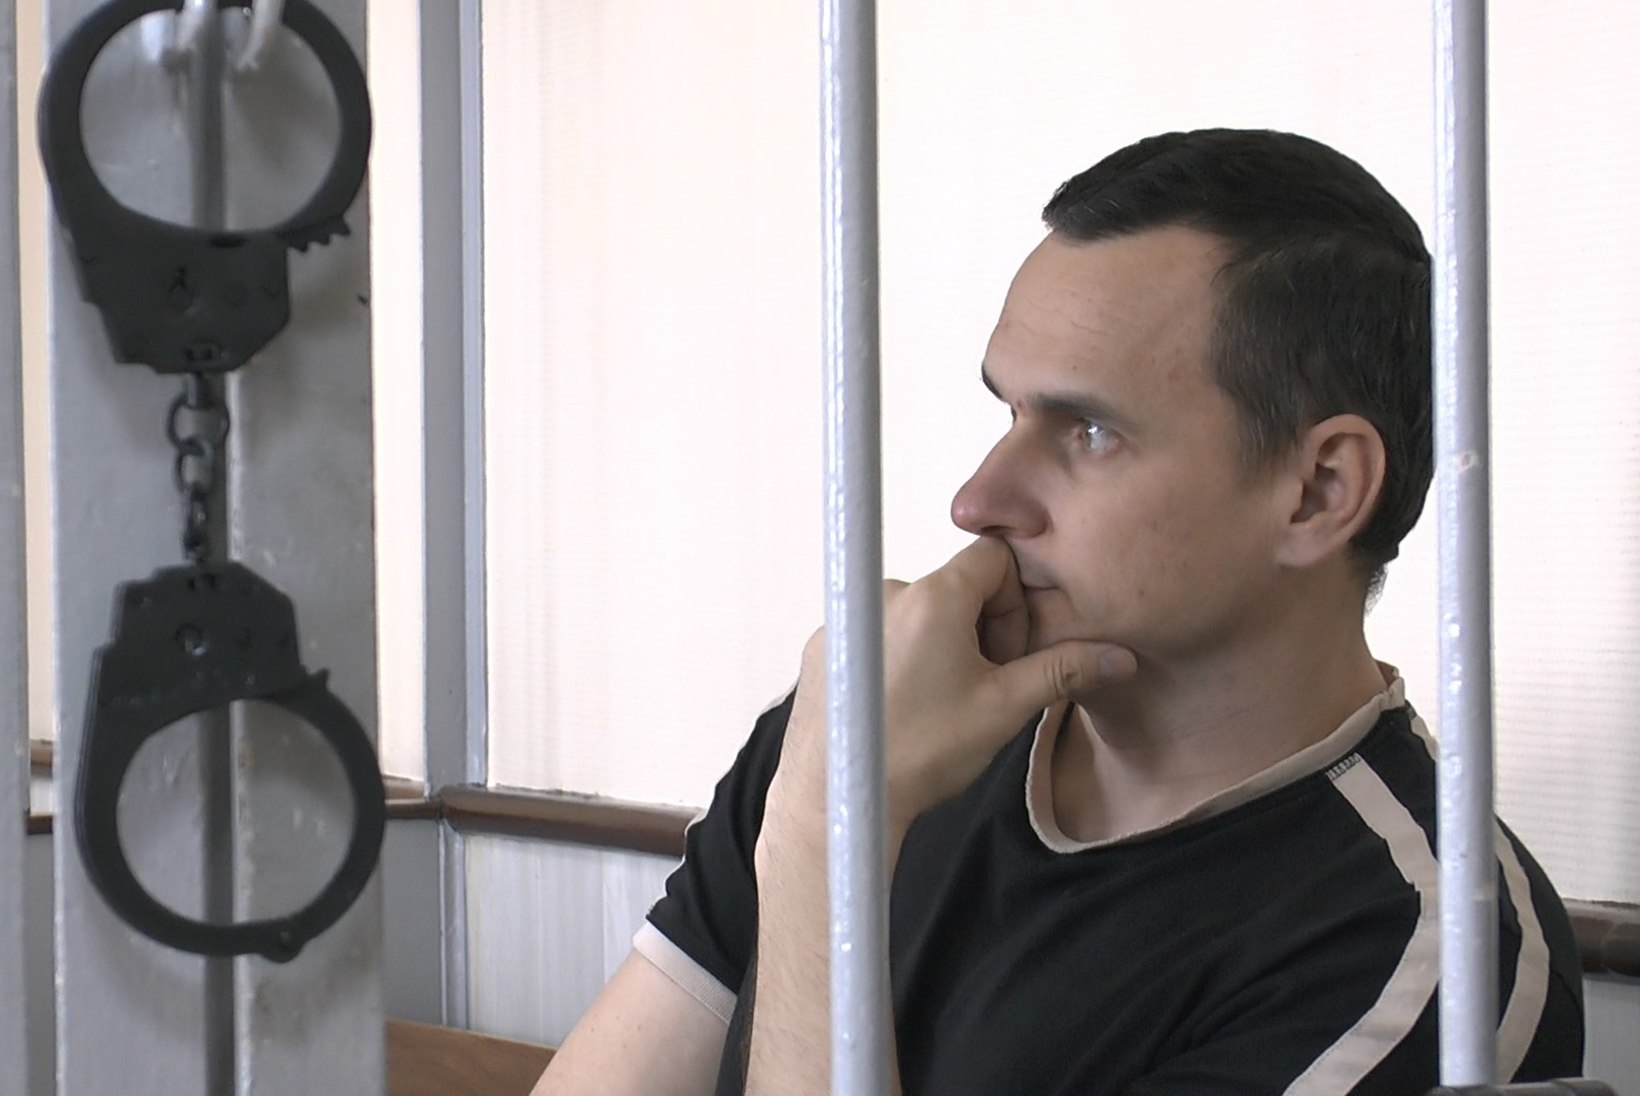 Eesti dokumentaalfilm "Protsess: Venemaa riik Oleg Sentsovi vastu" valiti Berliini filmifestivali programmi